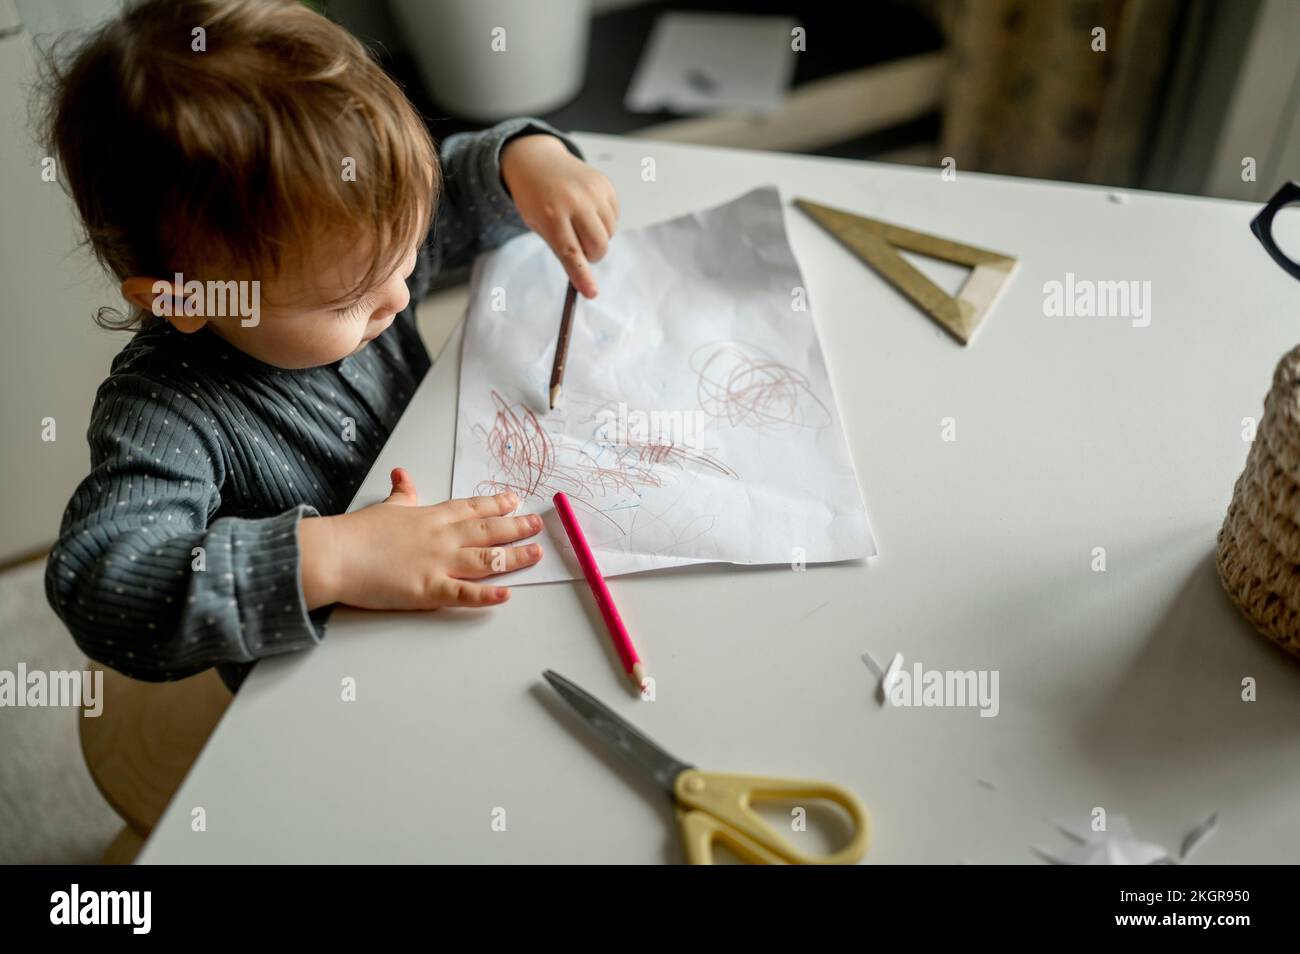 Un garçon griffonne avec un crayon sur le papier à la maison Banque D'Images